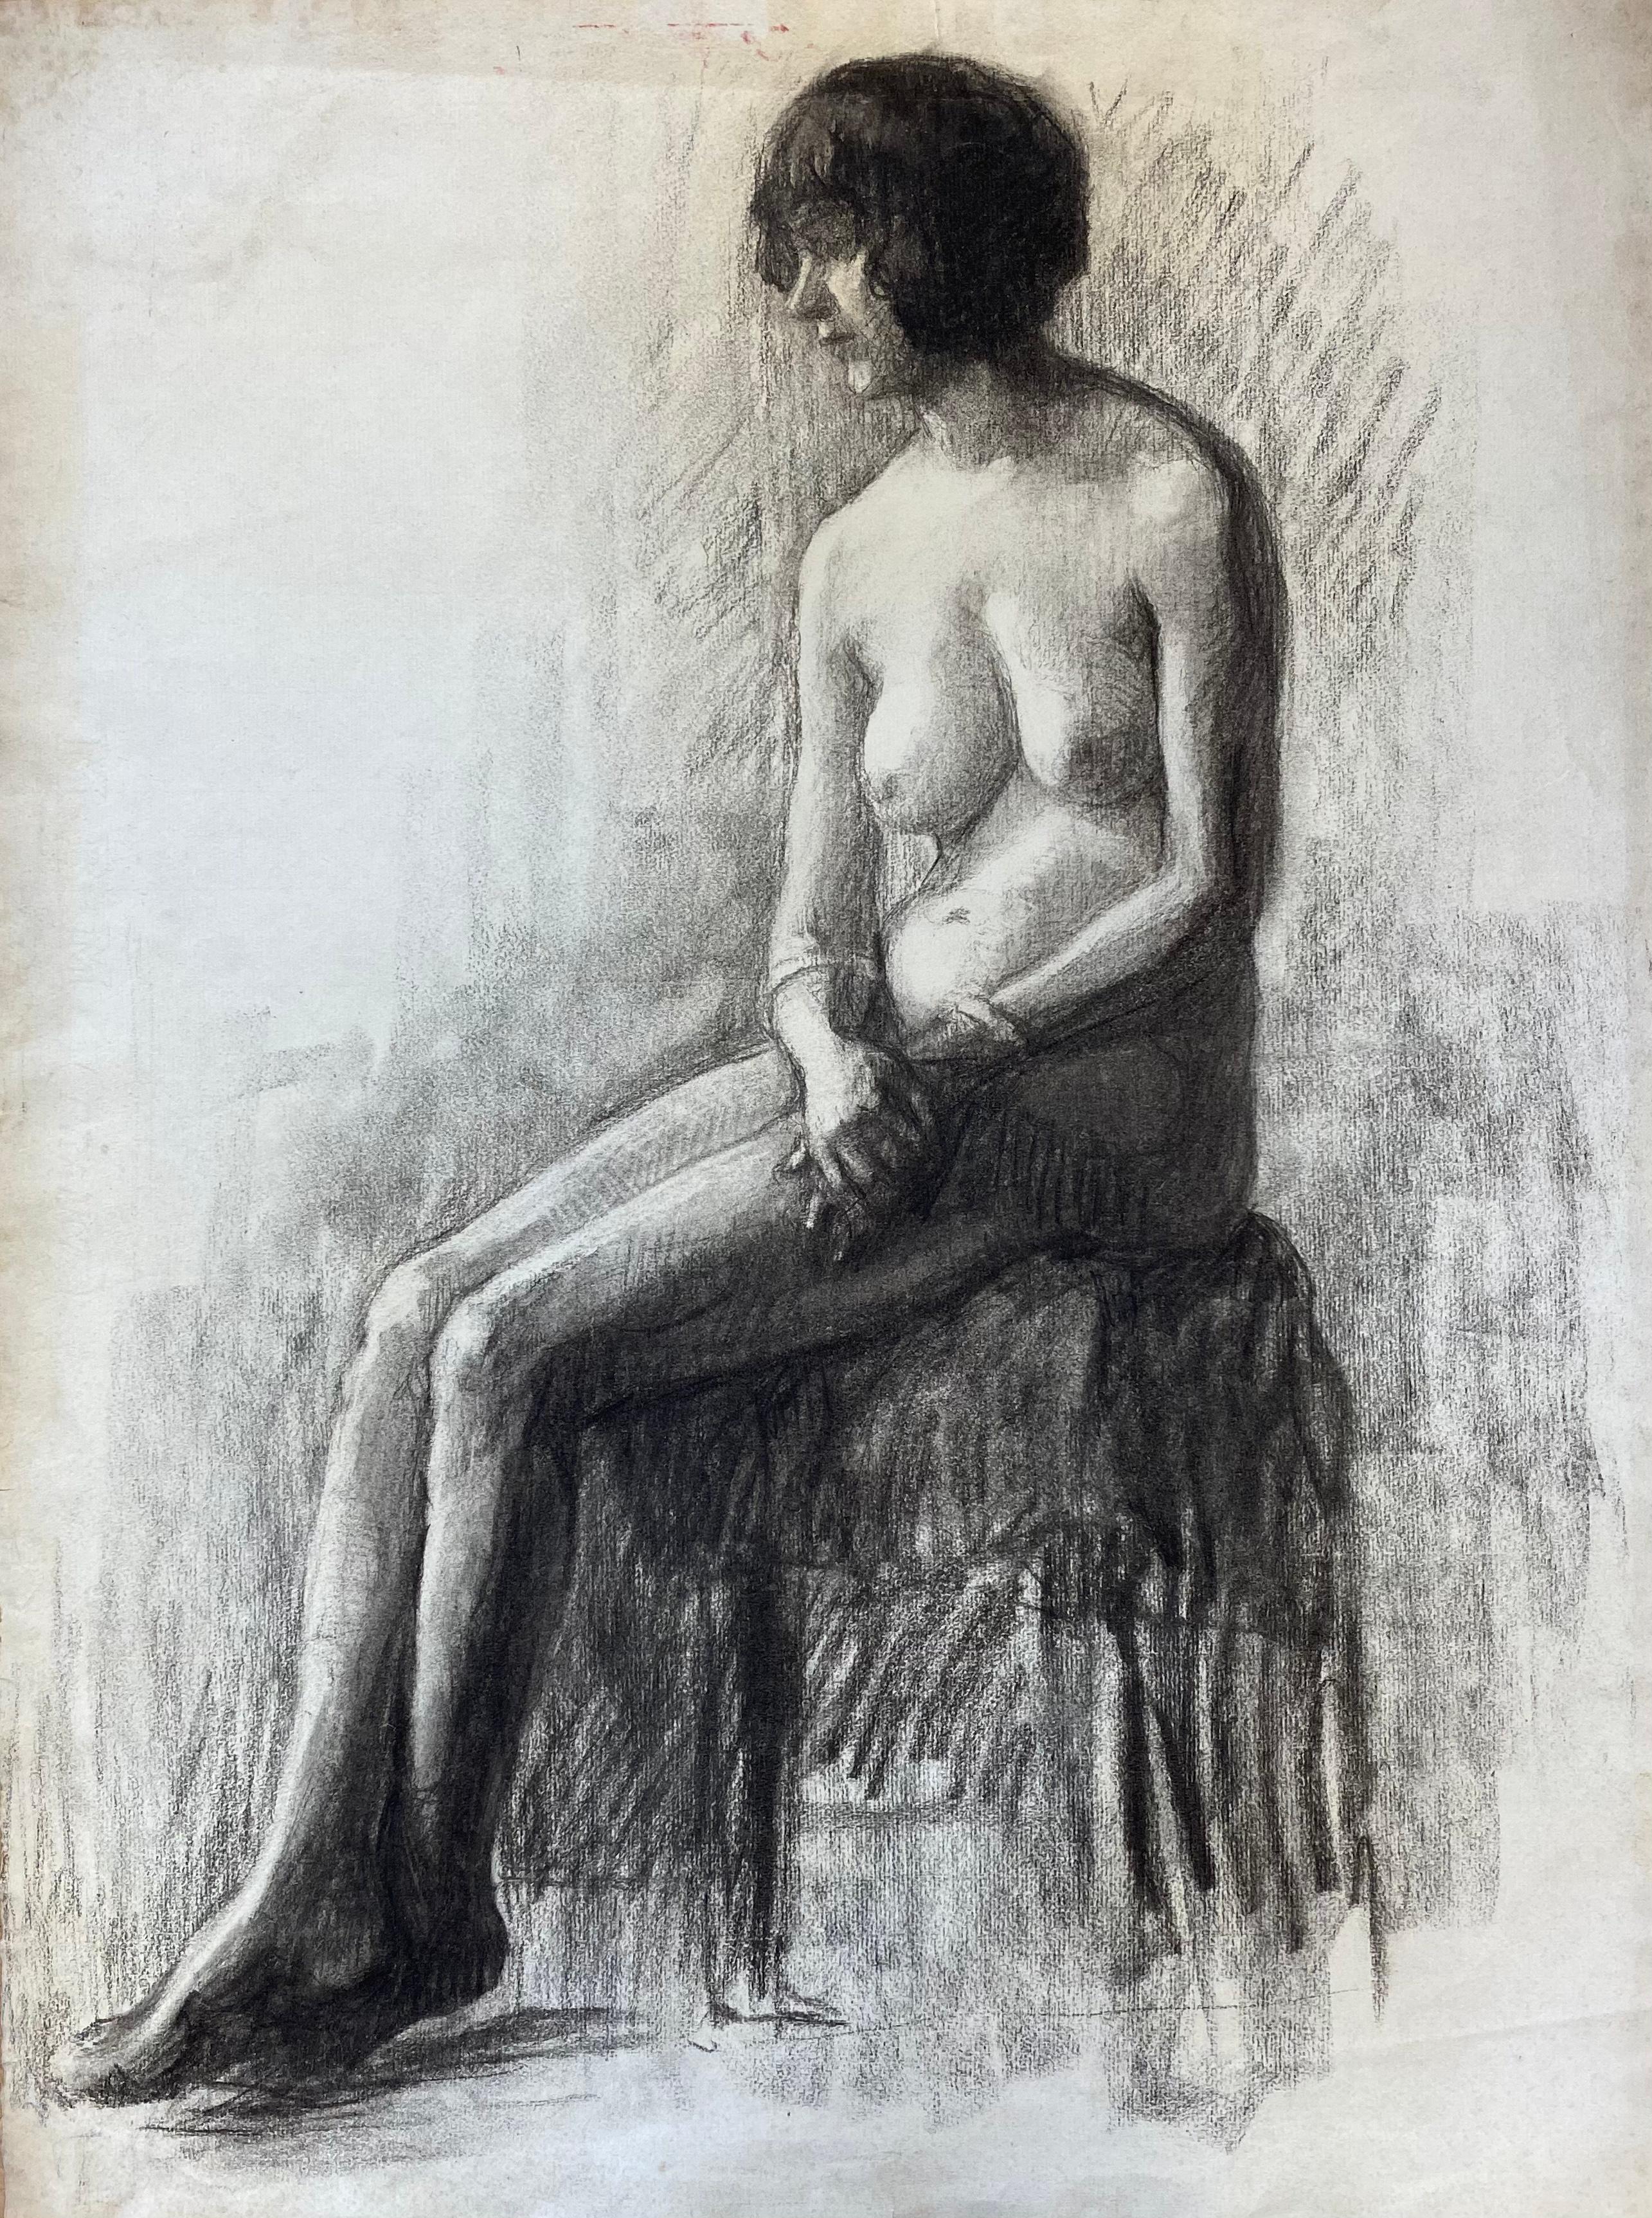 Französische Kohleskizze der sitzenden nackten Dame der Künstlerin aus den 1920er Jahren